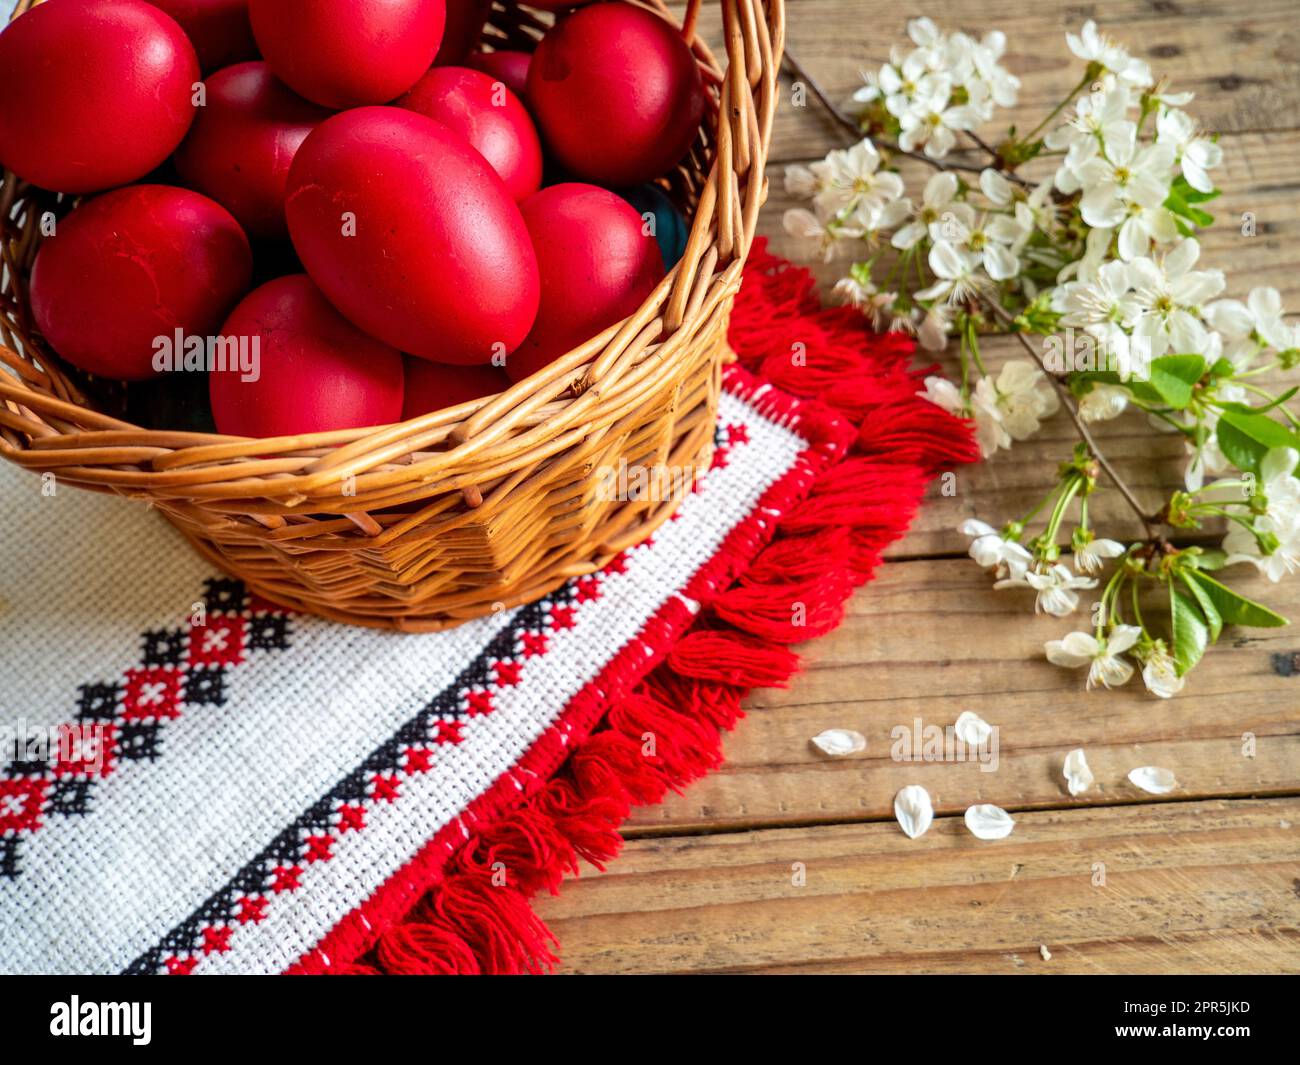 Panier d'œufs rouges de Pâques à côté des branches fleuries sur table en bois Banque D'Images